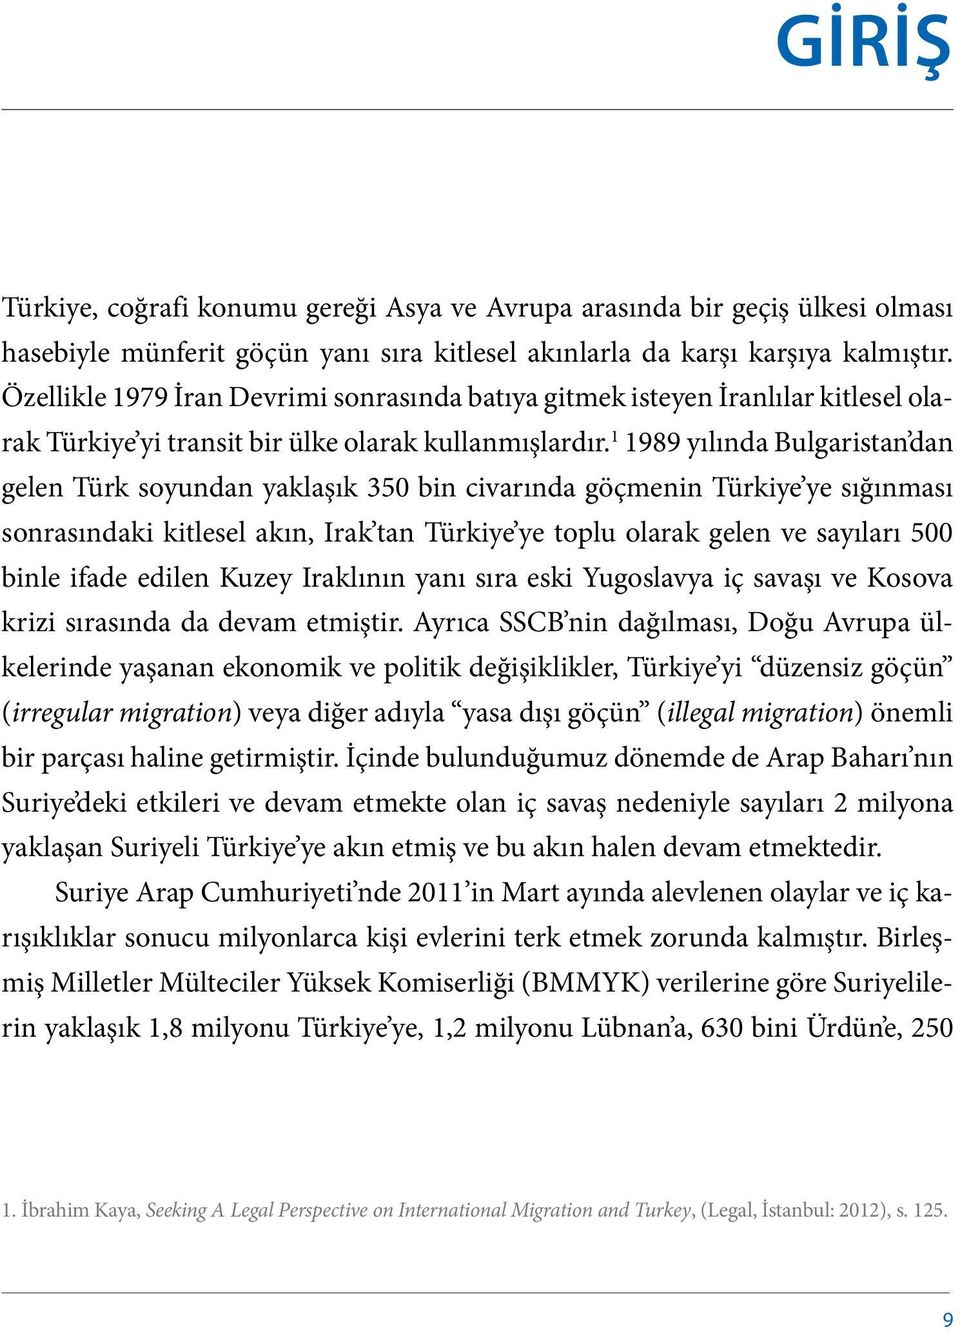 1 1989 yılında Bulgaristan dan gelen Türk soyundan yaklaşık 350 bin civarında göçmenin Türkiye ye sığınması sonrasındaki kitlesel akın, Irak tan Türkiye ye toplu olarak gelen ve sayıları 500 binle